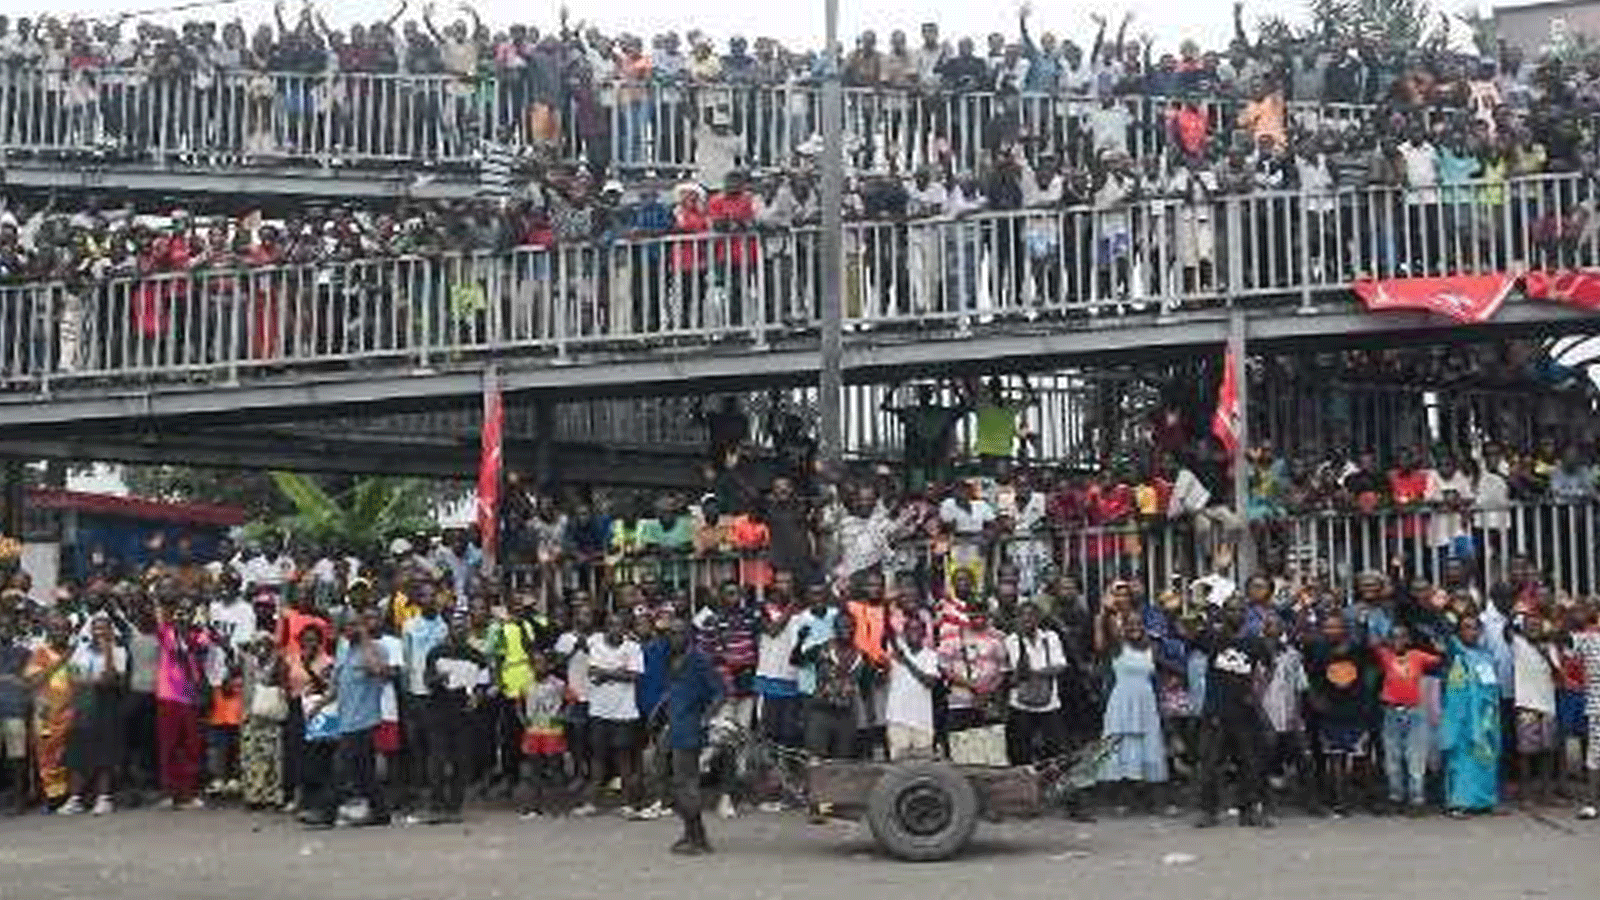  حشود في انتظار مرور الباب في كينشاسا تيزيانا فابي